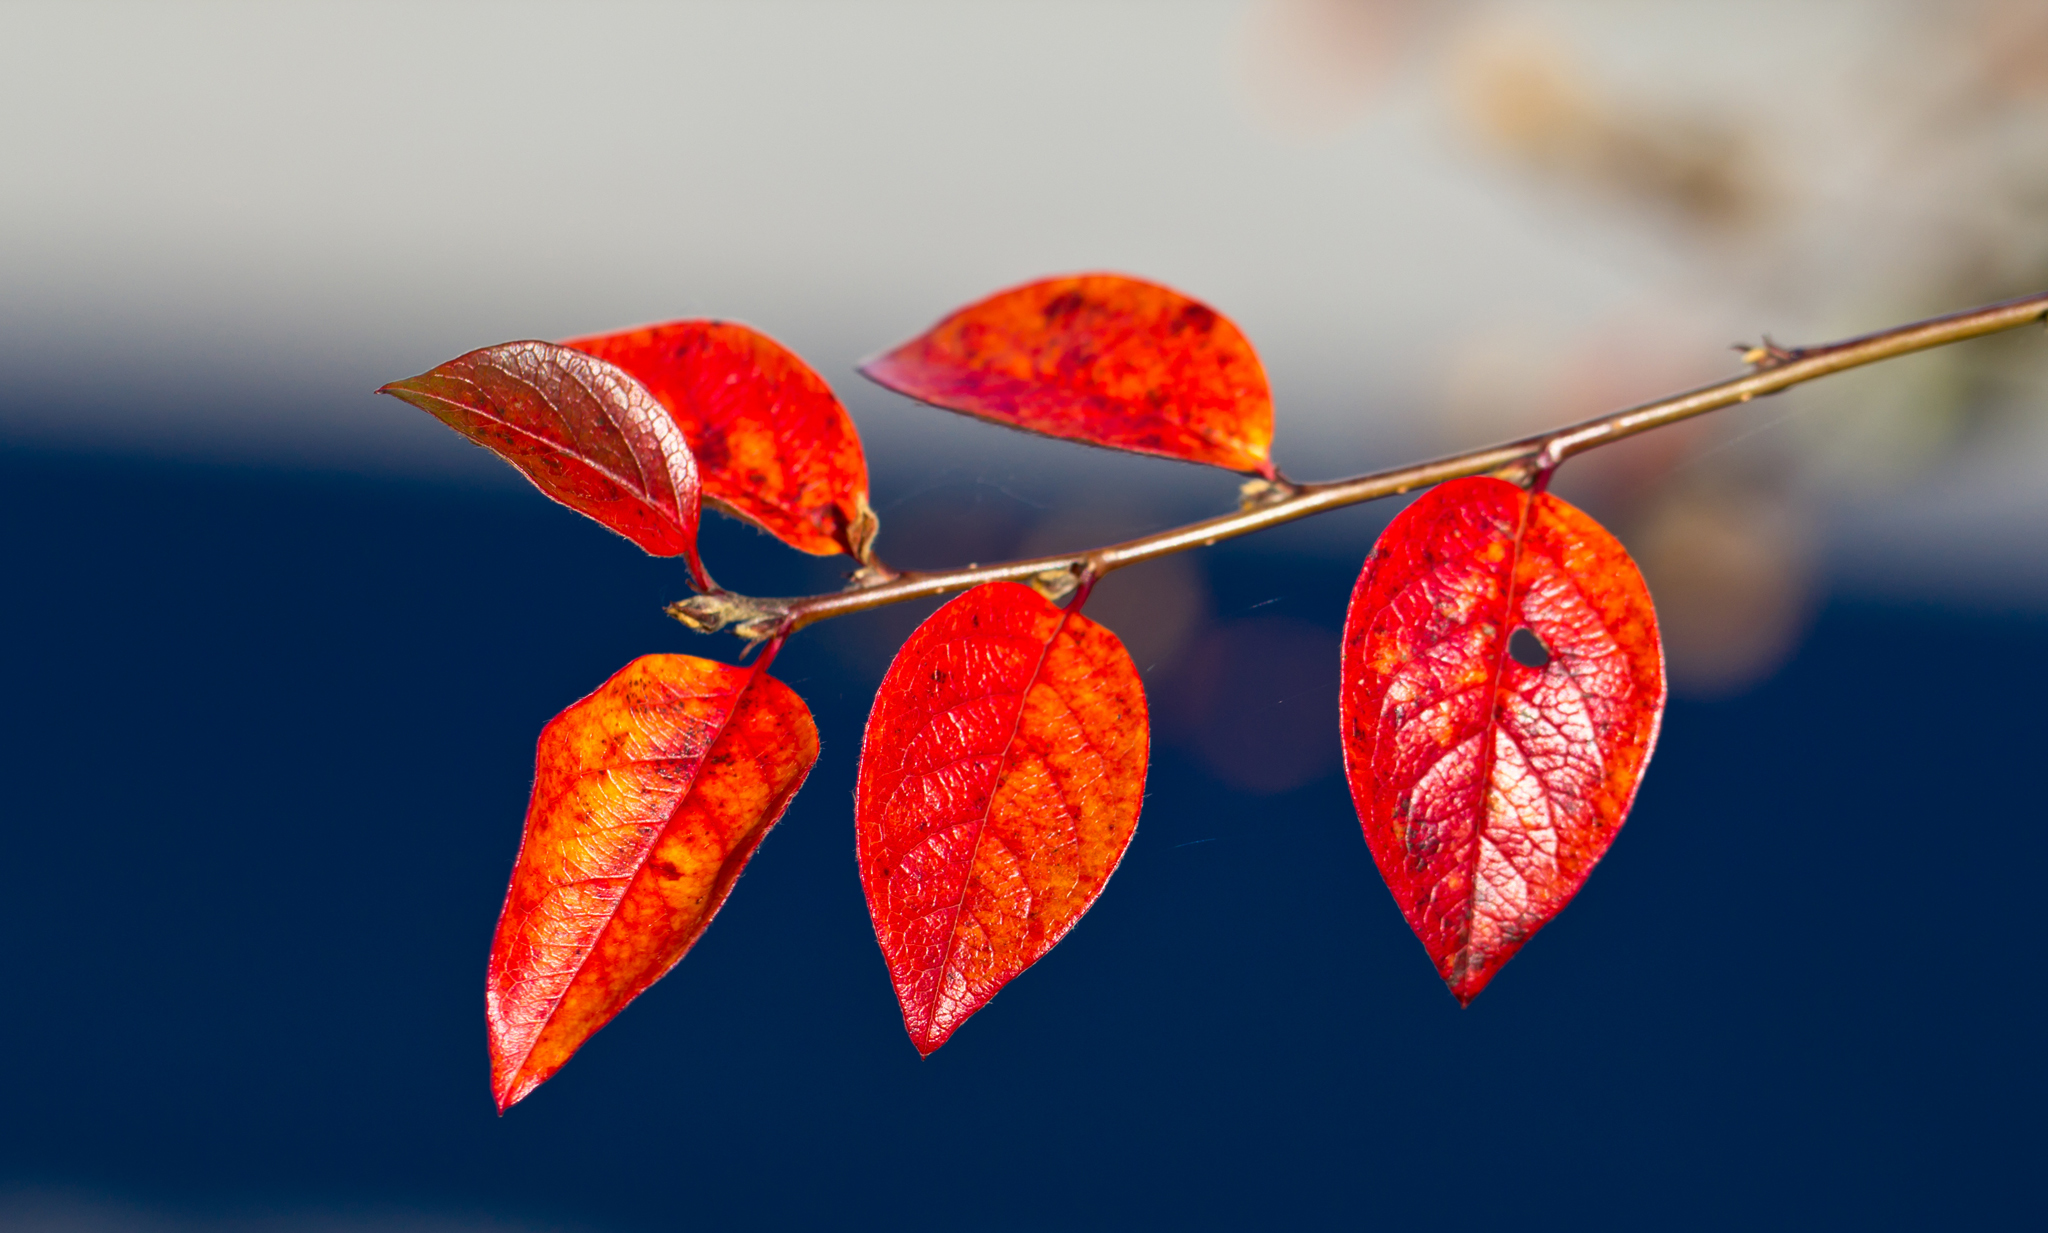 ветка листья красные осень branch leaves red autumn скачать